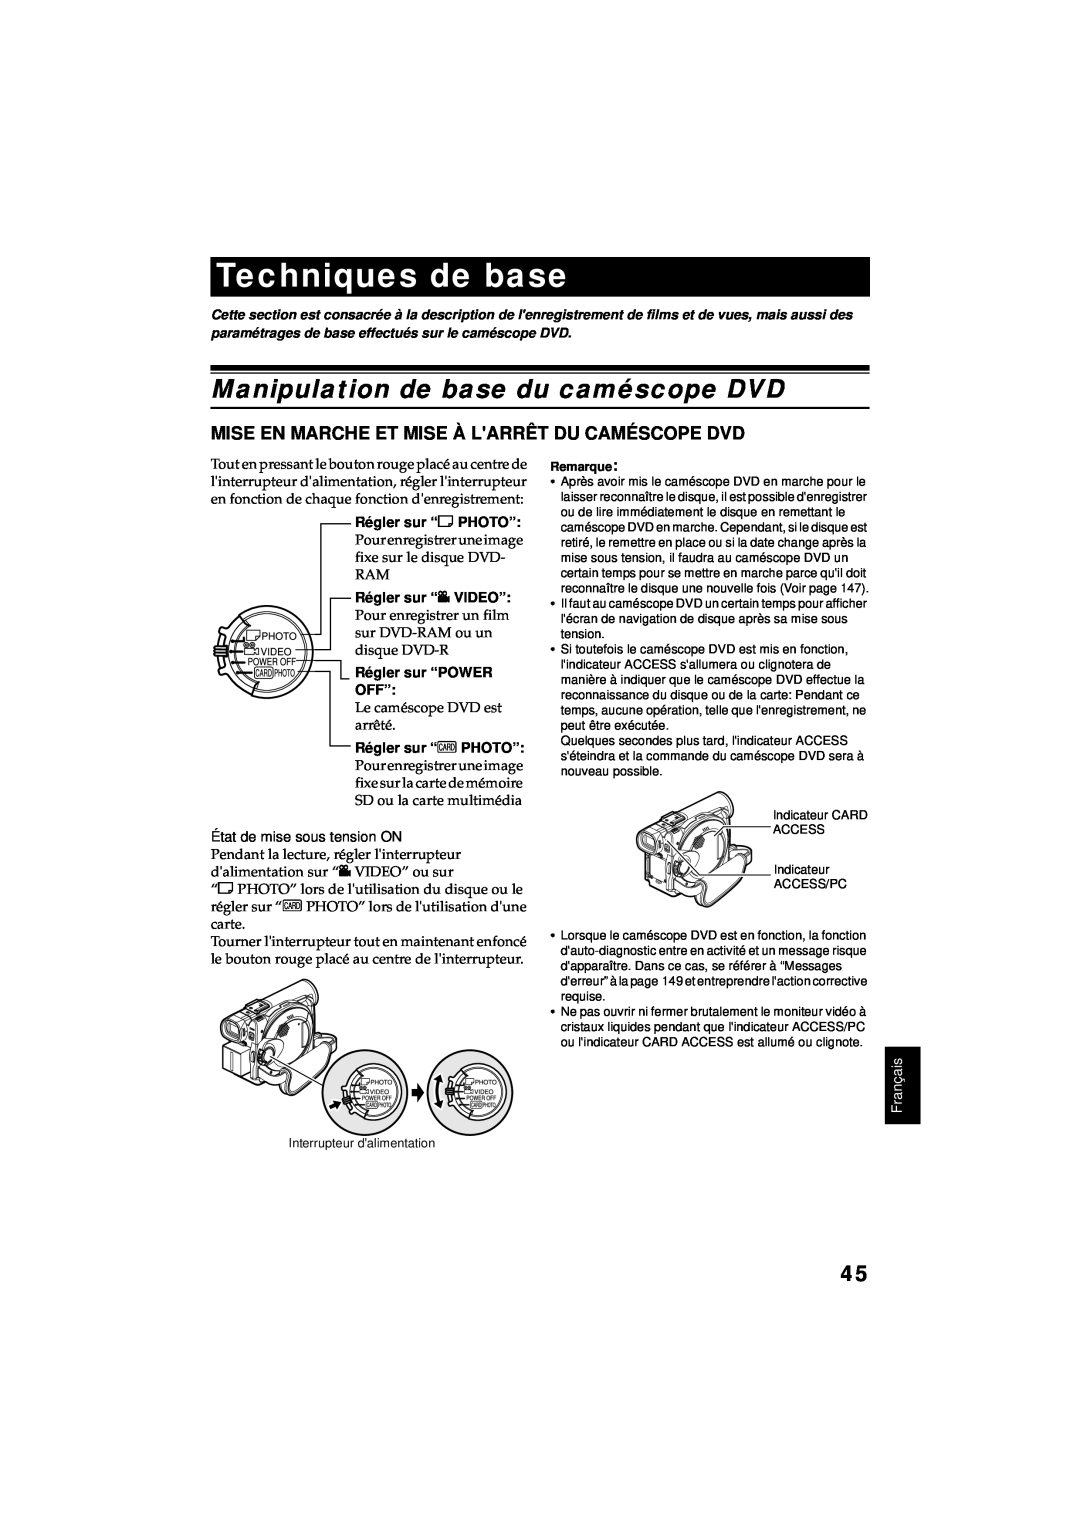 Hitachi DZ-MV380A manual Techniques de base, Manipulation de base du caméscope DVD, Régler sur “POWER OFF”, Français 